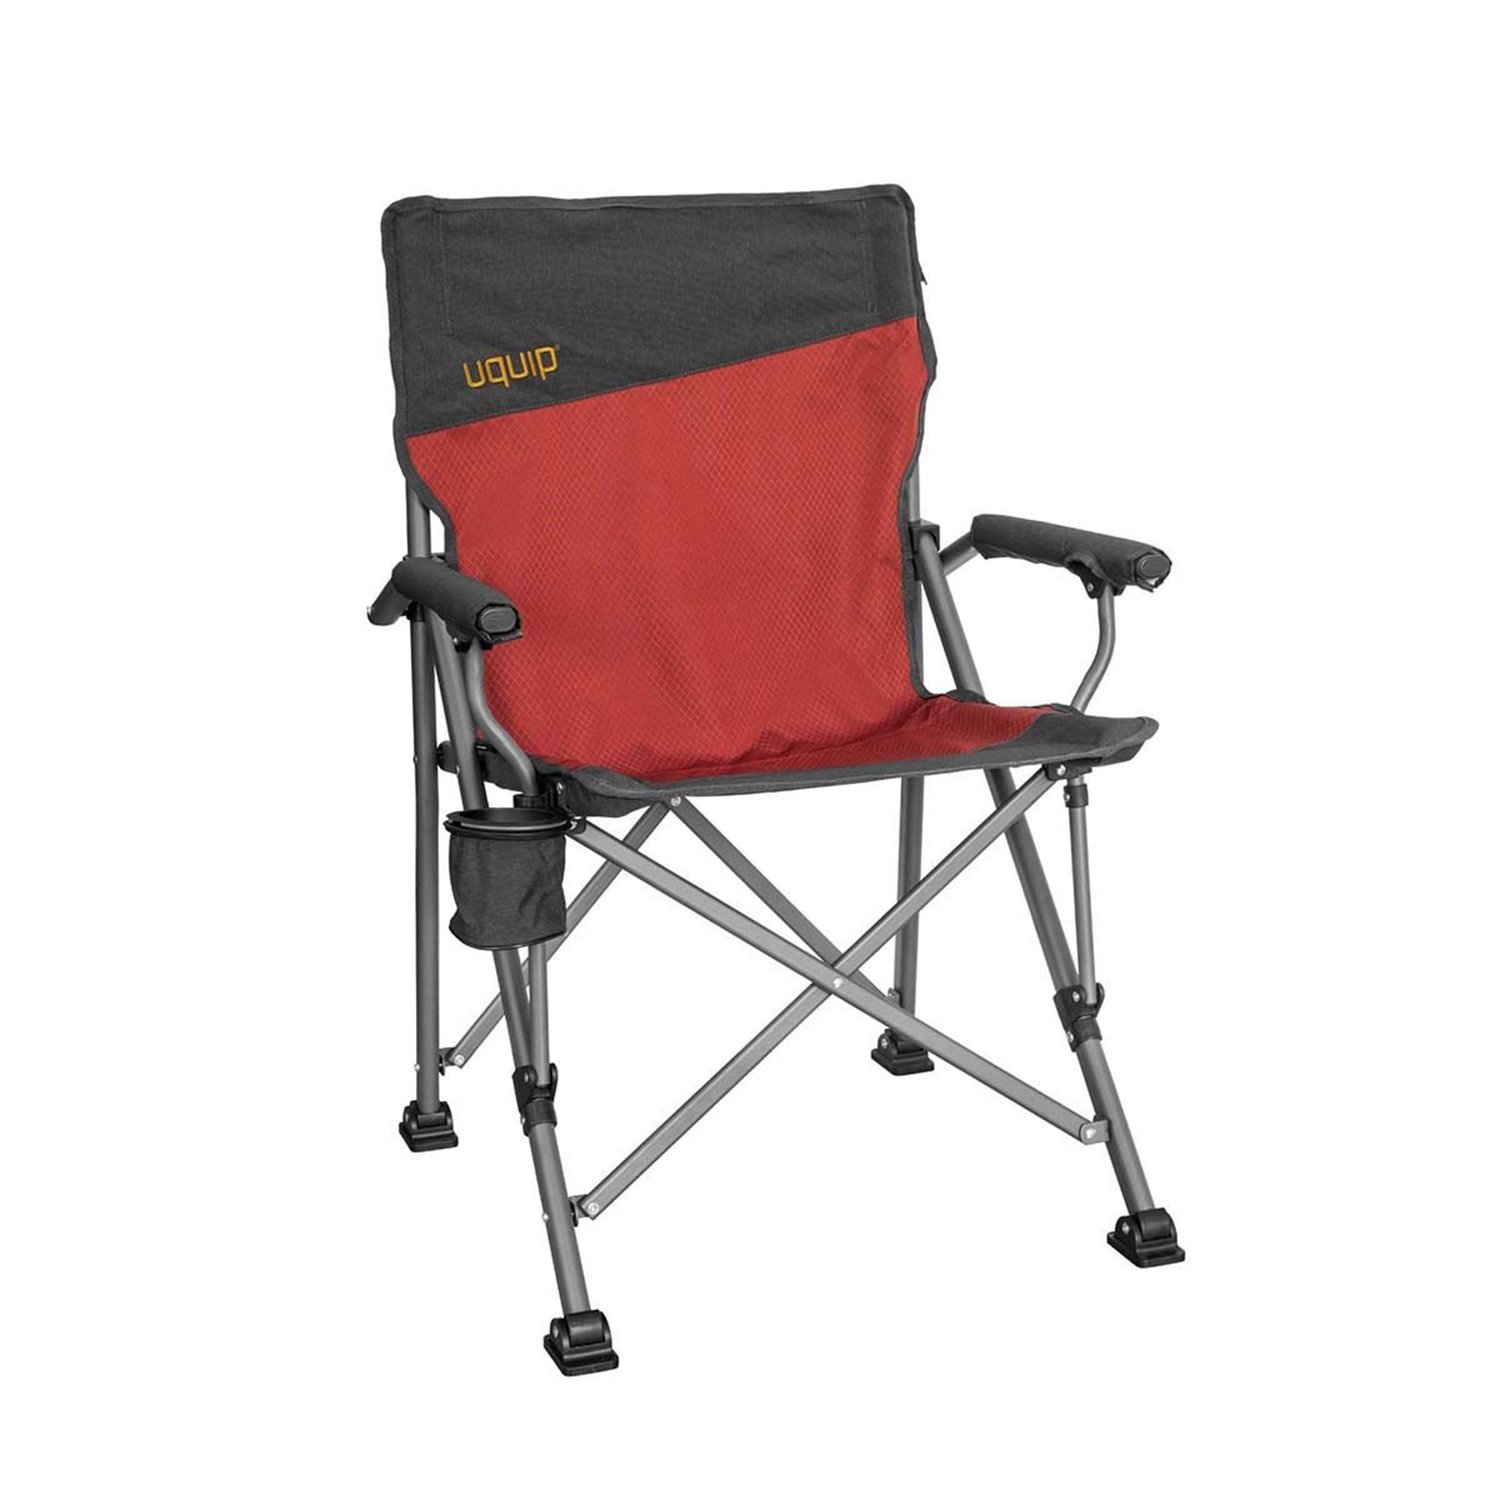 Uquip Roxy Yüksek Konforlu & Takviyeli Katlanır Kamp Sandalyesi Red - Bordo - 1